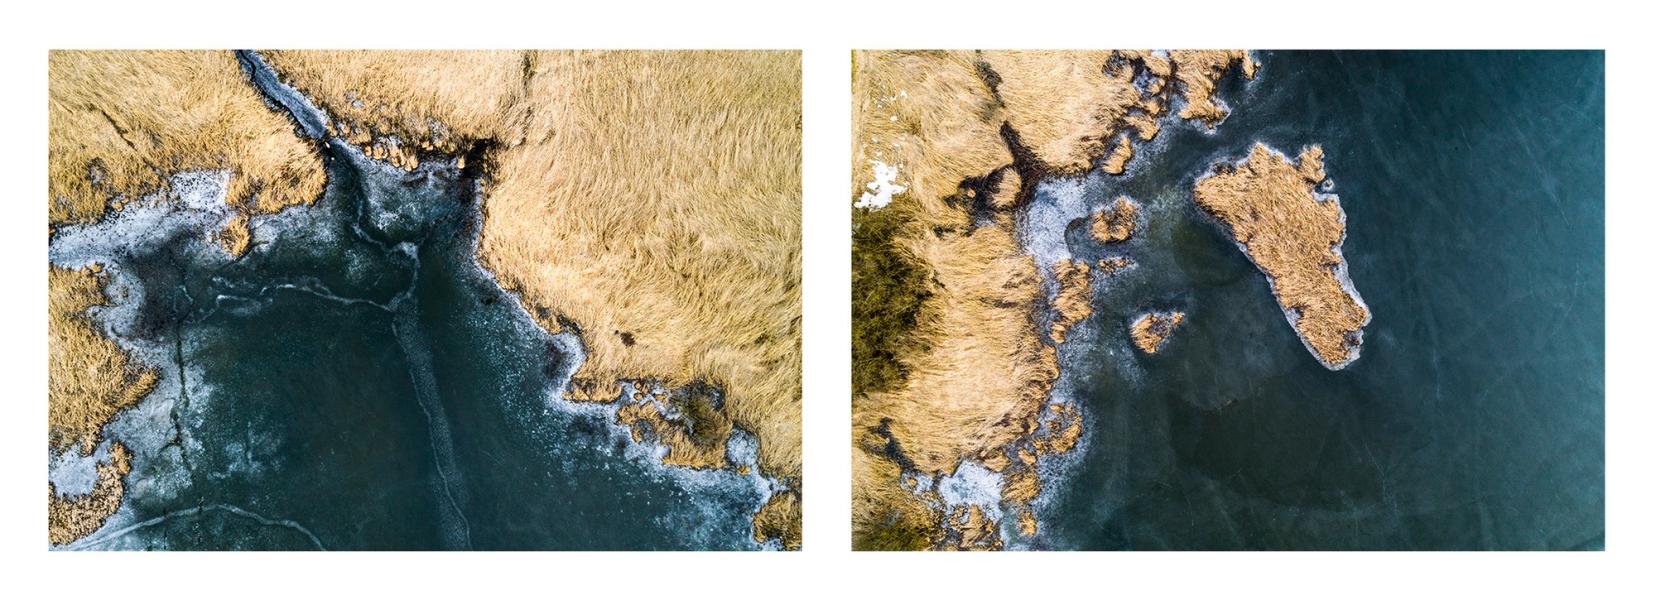 Stefan Kuhn's "Lakeshore Operations / Winter Serie #5" Drohnen Fotografie zeigt ein Seeufer mit 2 Motiven in einem Bild.